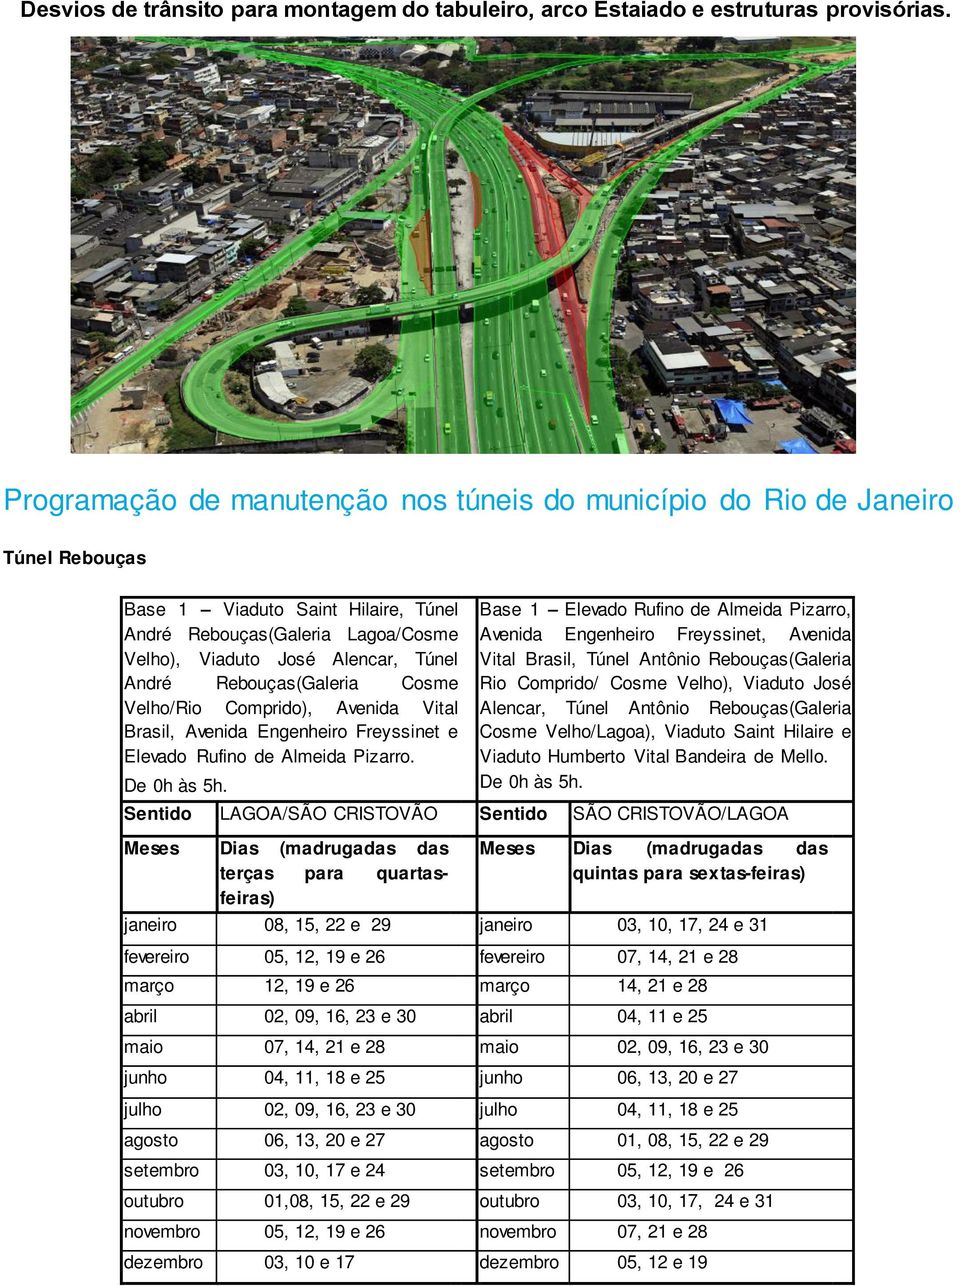 Rebouças(Galeria Cosme Velho/Rio Comprido), Avenida Vital Brasil, Avenida Engenheiro Freyssinet e Elevado Rufino de Almeida Pizarro. De 0h às 5h.